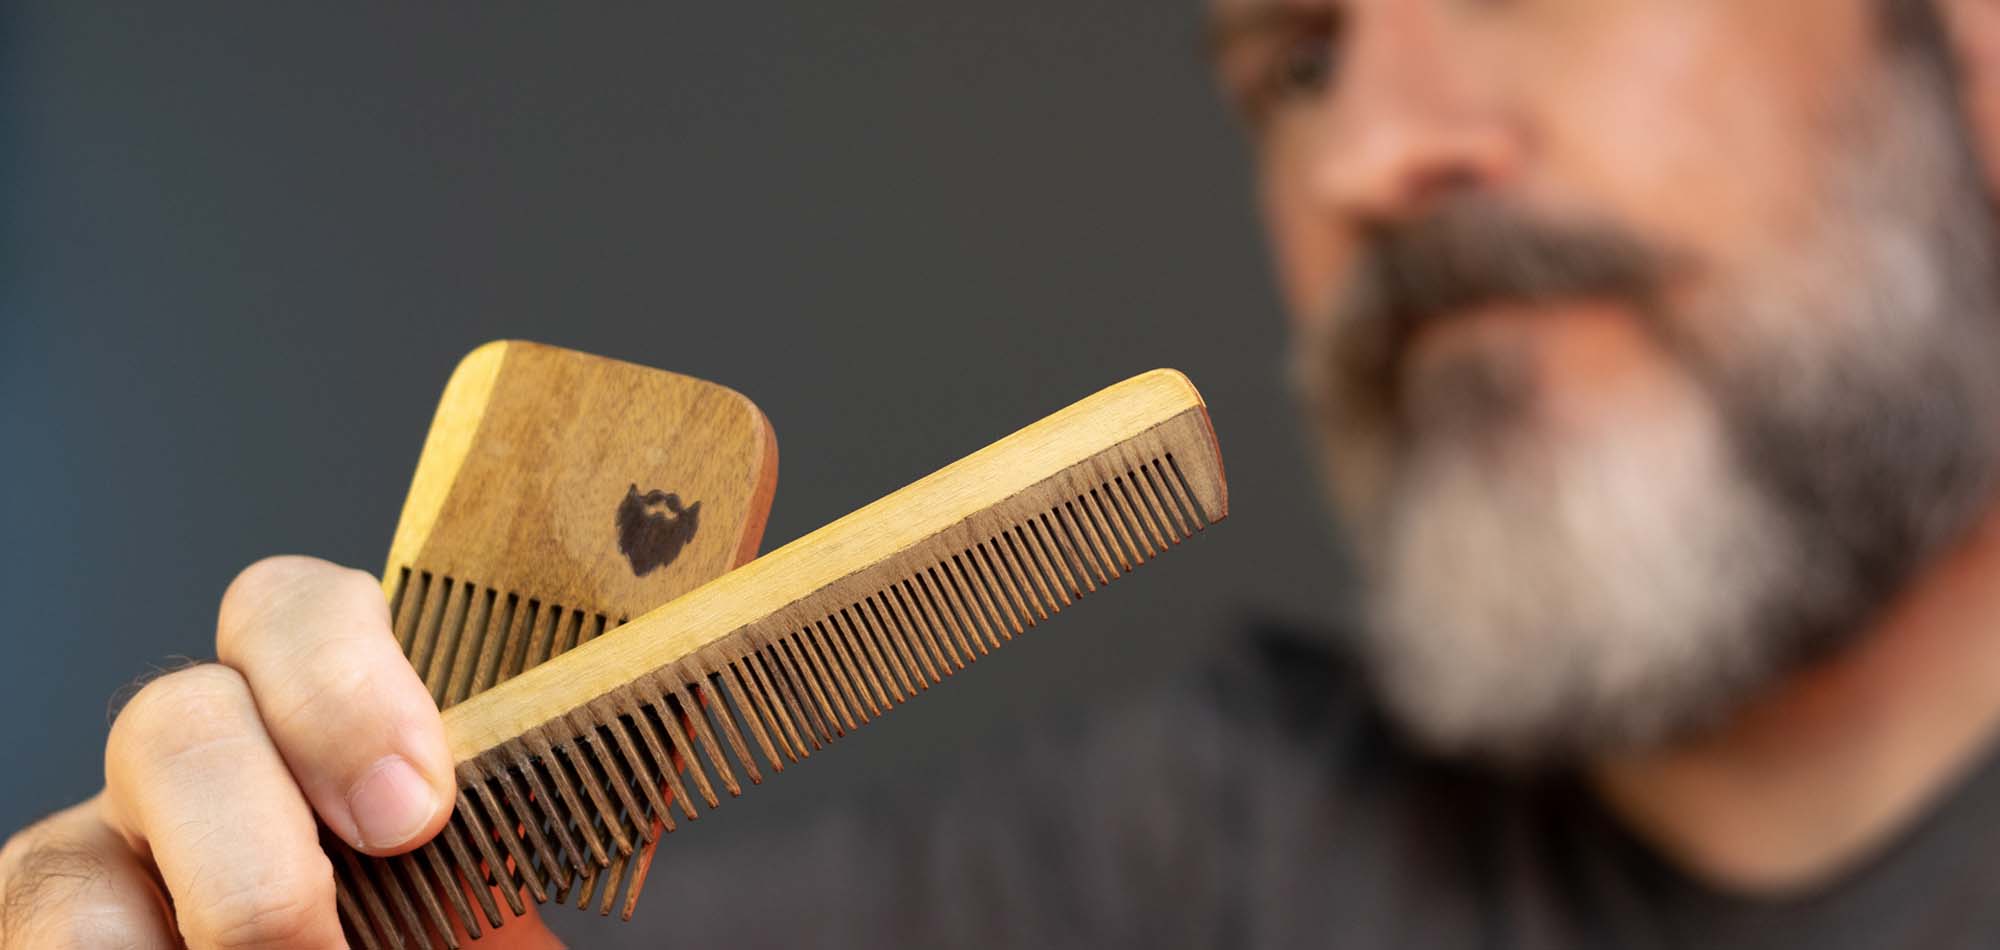 Como Escolher o Pente Certo Para Barba Crespa | E outras dúvidas